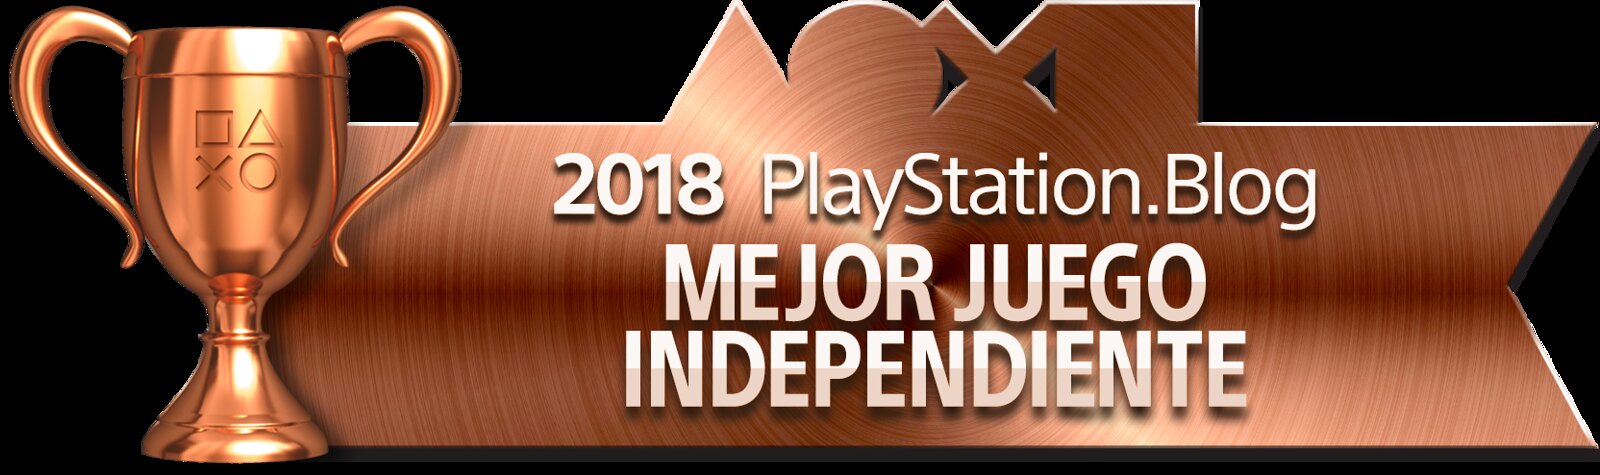 Best Independent Game - Bronze